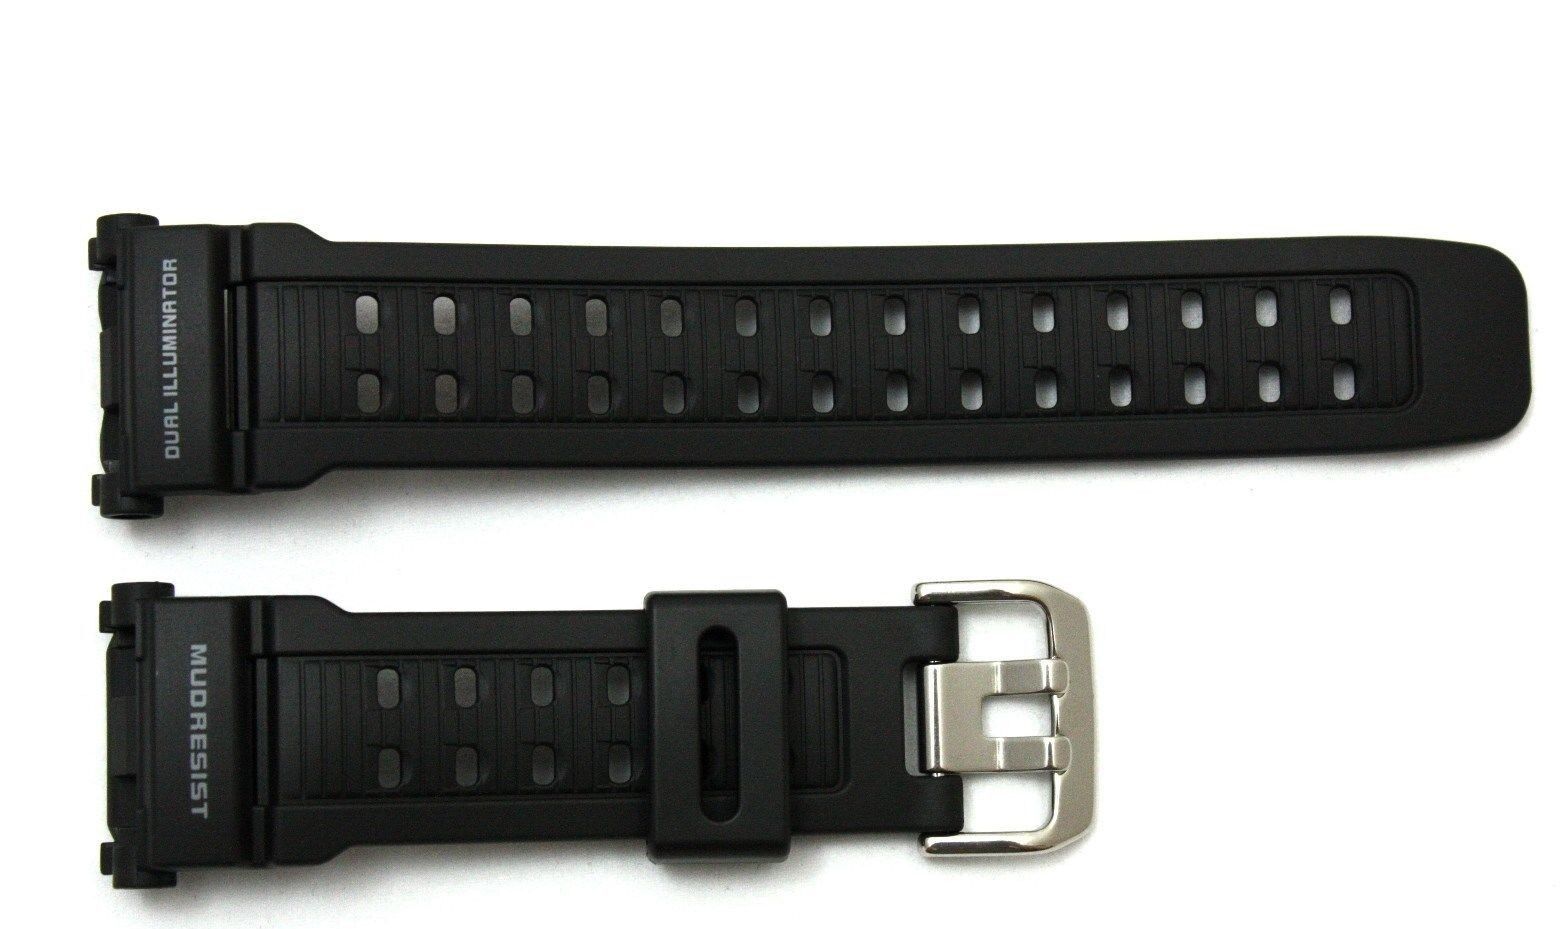 CASIO New Original Watch Band G-Shock Mudman G-9000 Black Rubber Strap G-9000-1